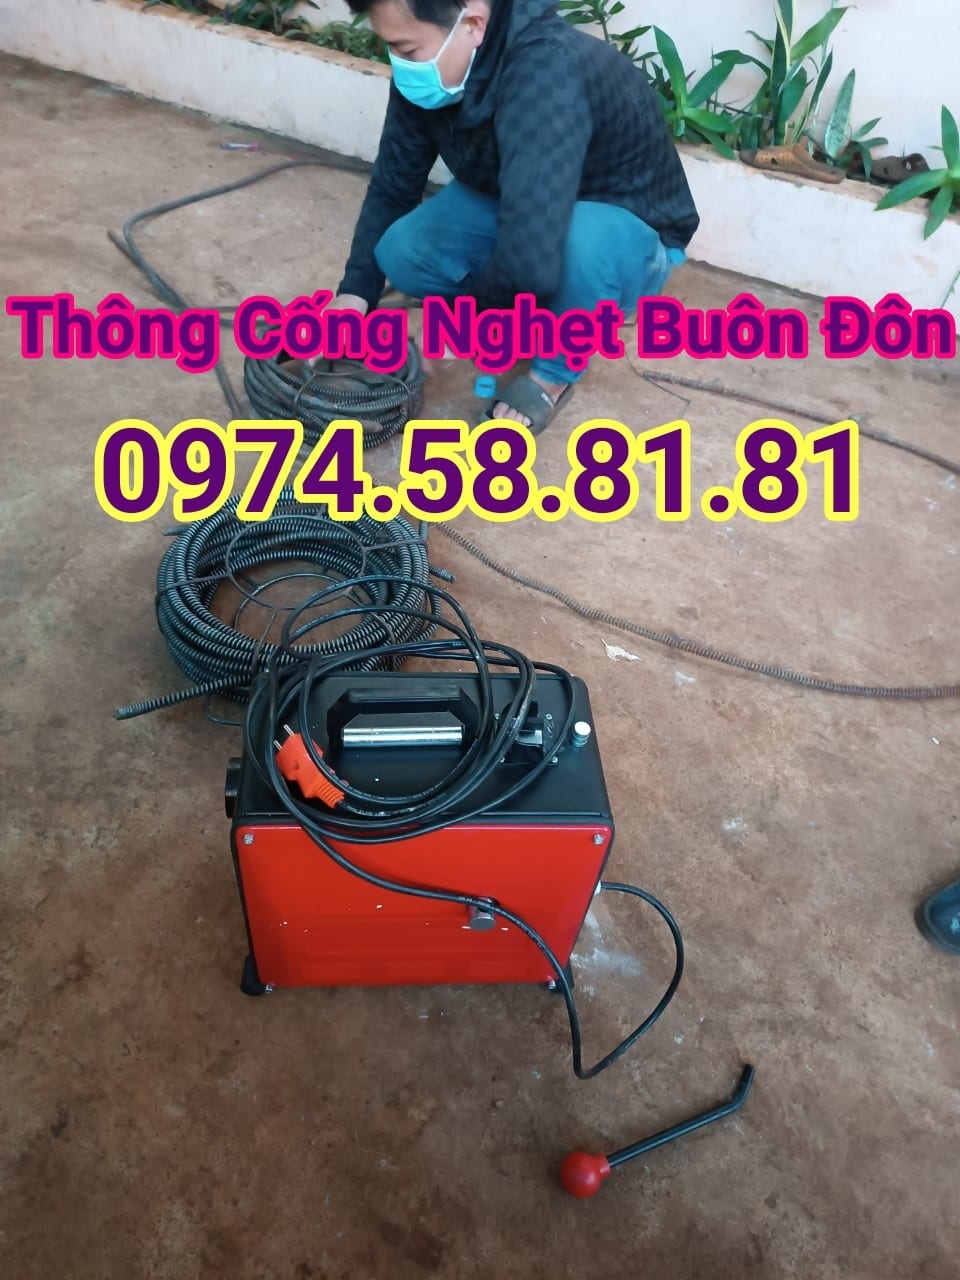 Thong-tac-cong-buon-don